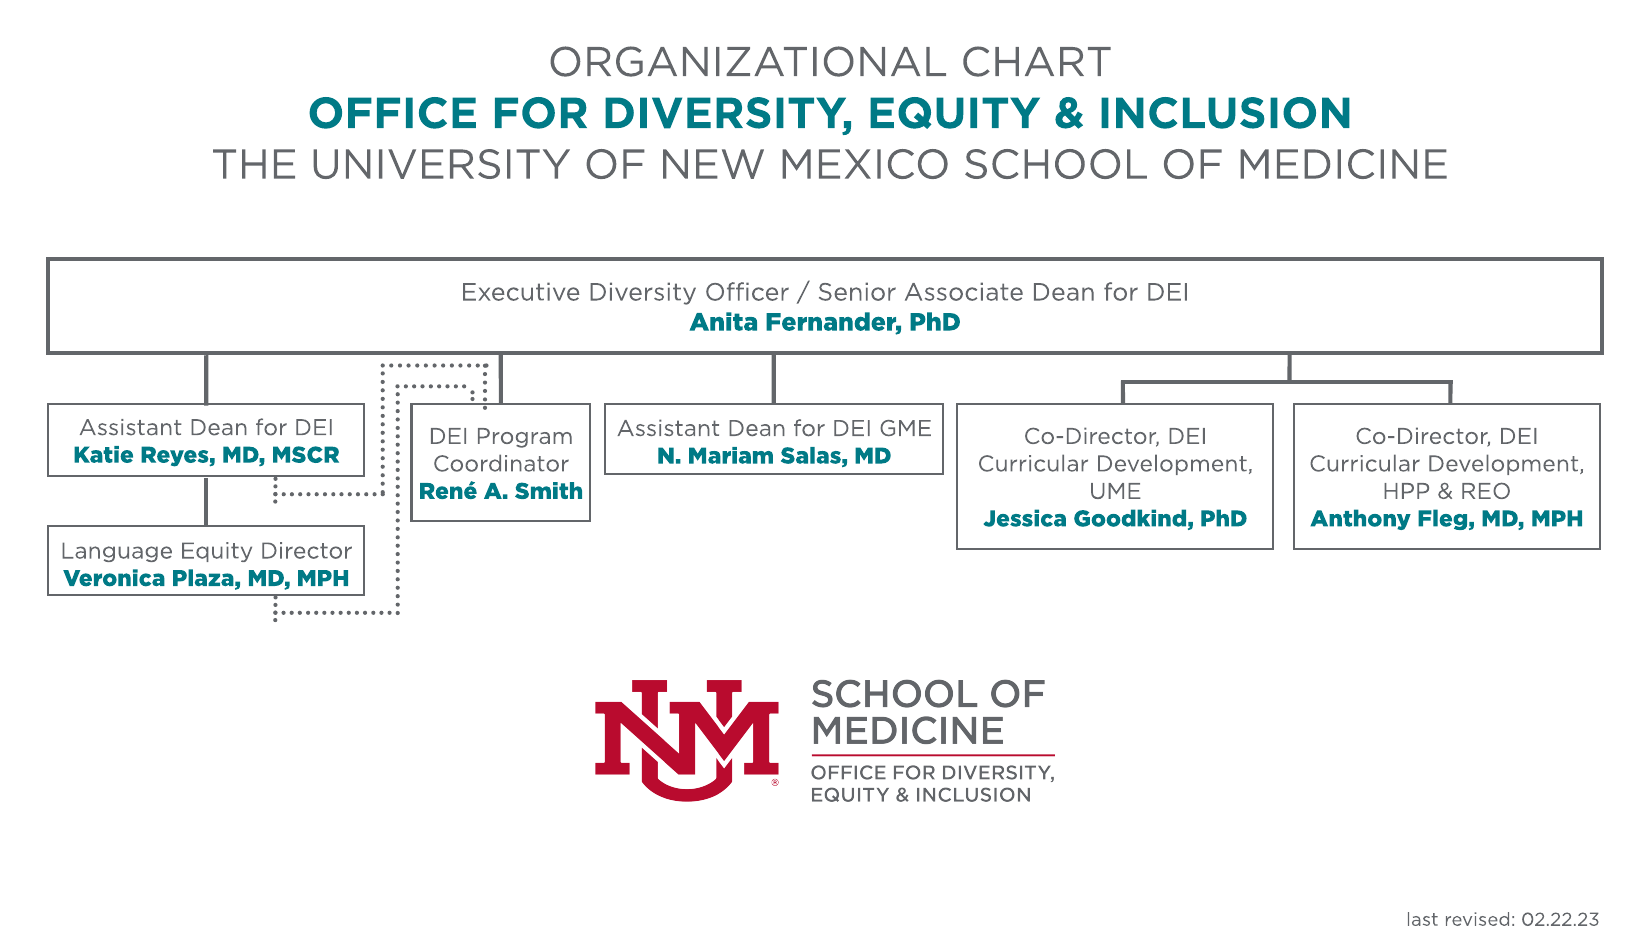 organograma do Escritório de Diversidade, Equidade e Inclusão da Faculdade de Medicina da UNM